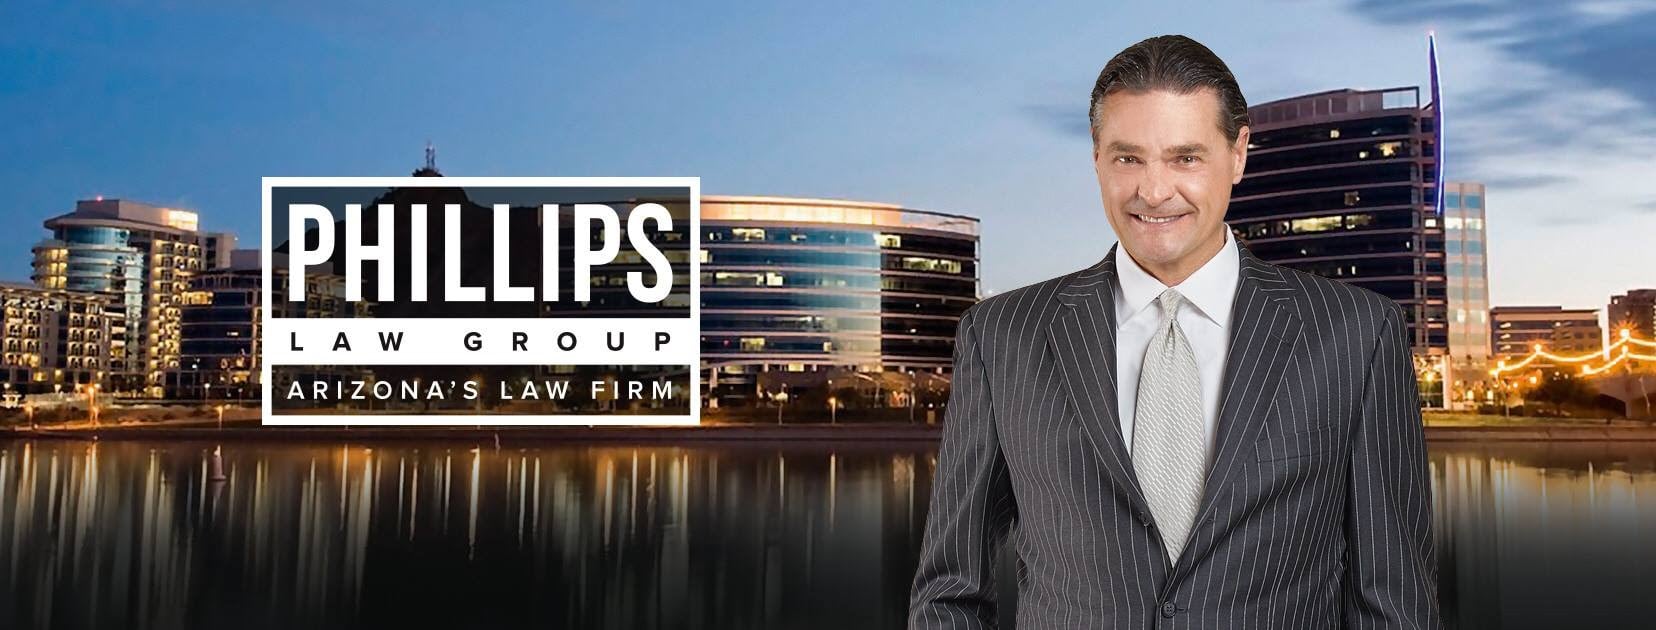 Phillips Law Group - Phoenix, AZ, US, best divorce attorney